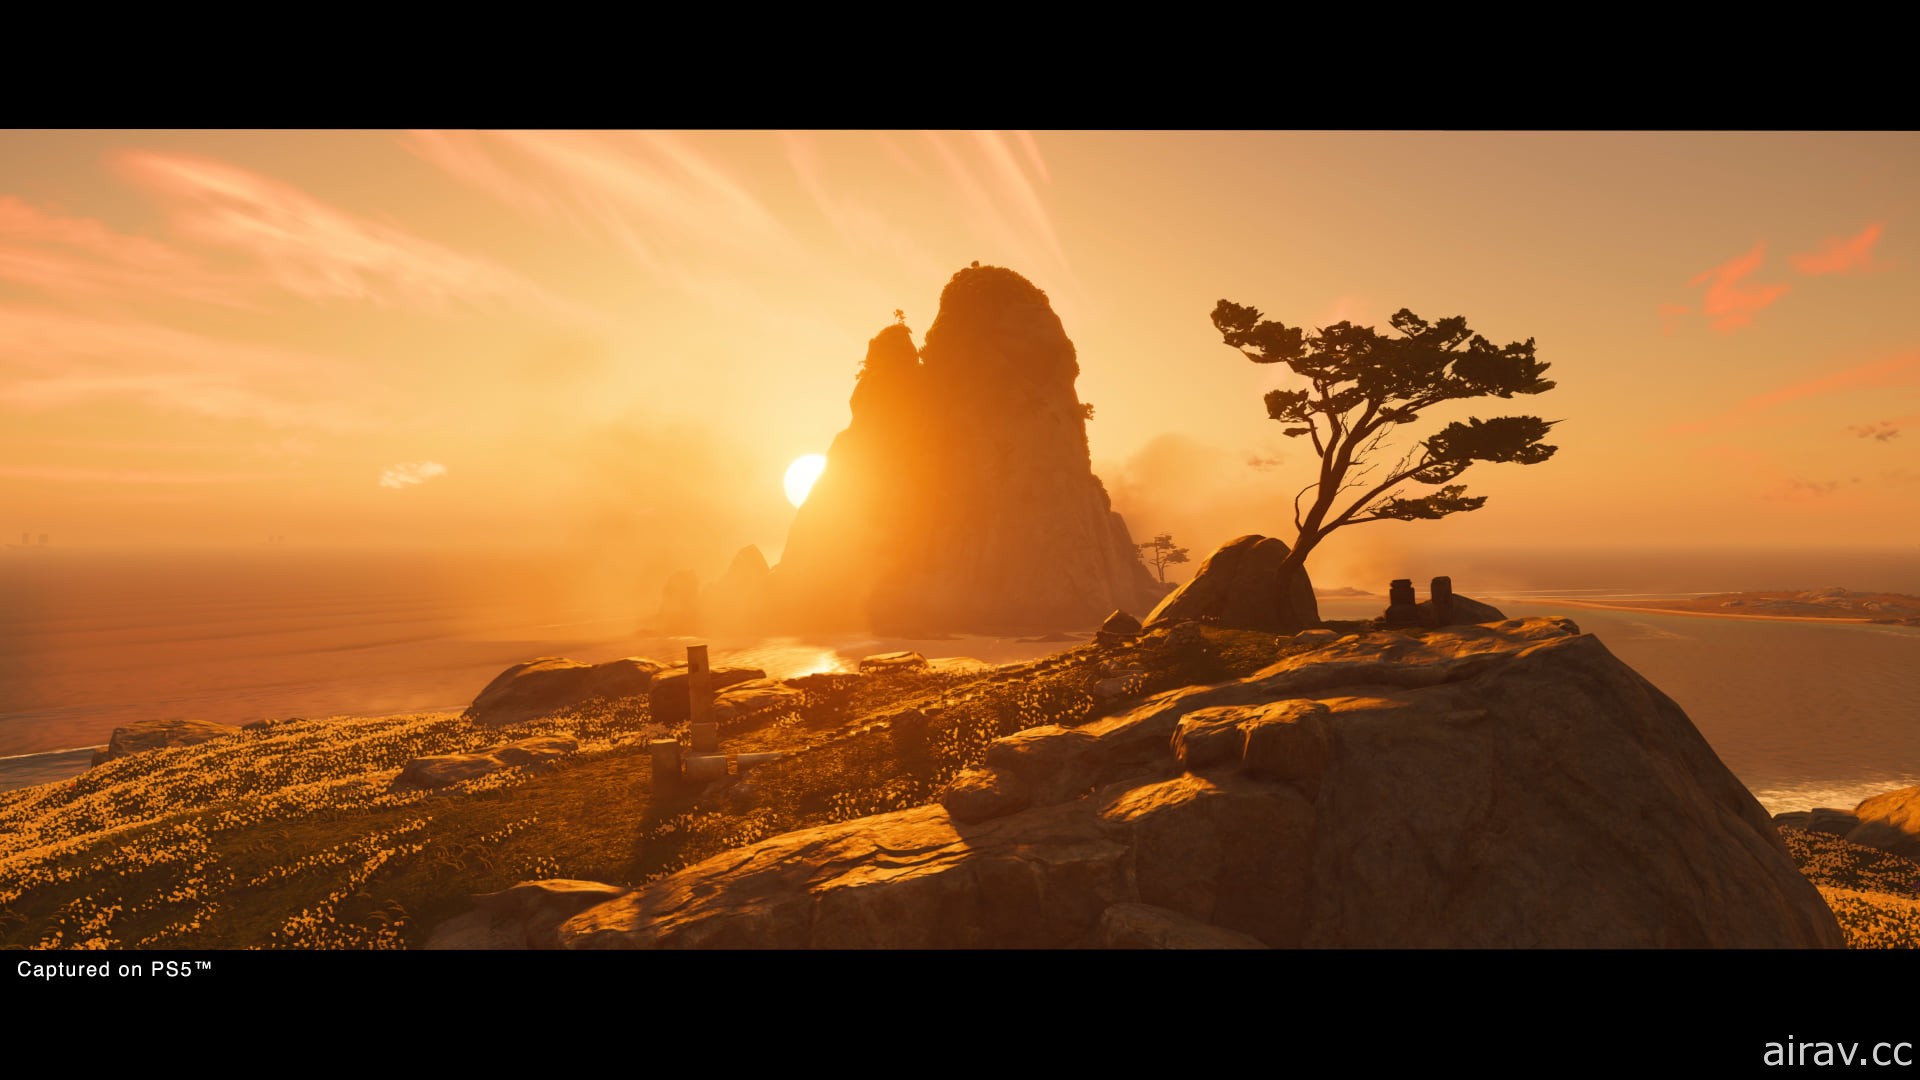 《對馬戰鬼 導演版》8 月登場 追加 PS5 強化功能與「壹歧島之章」新內容